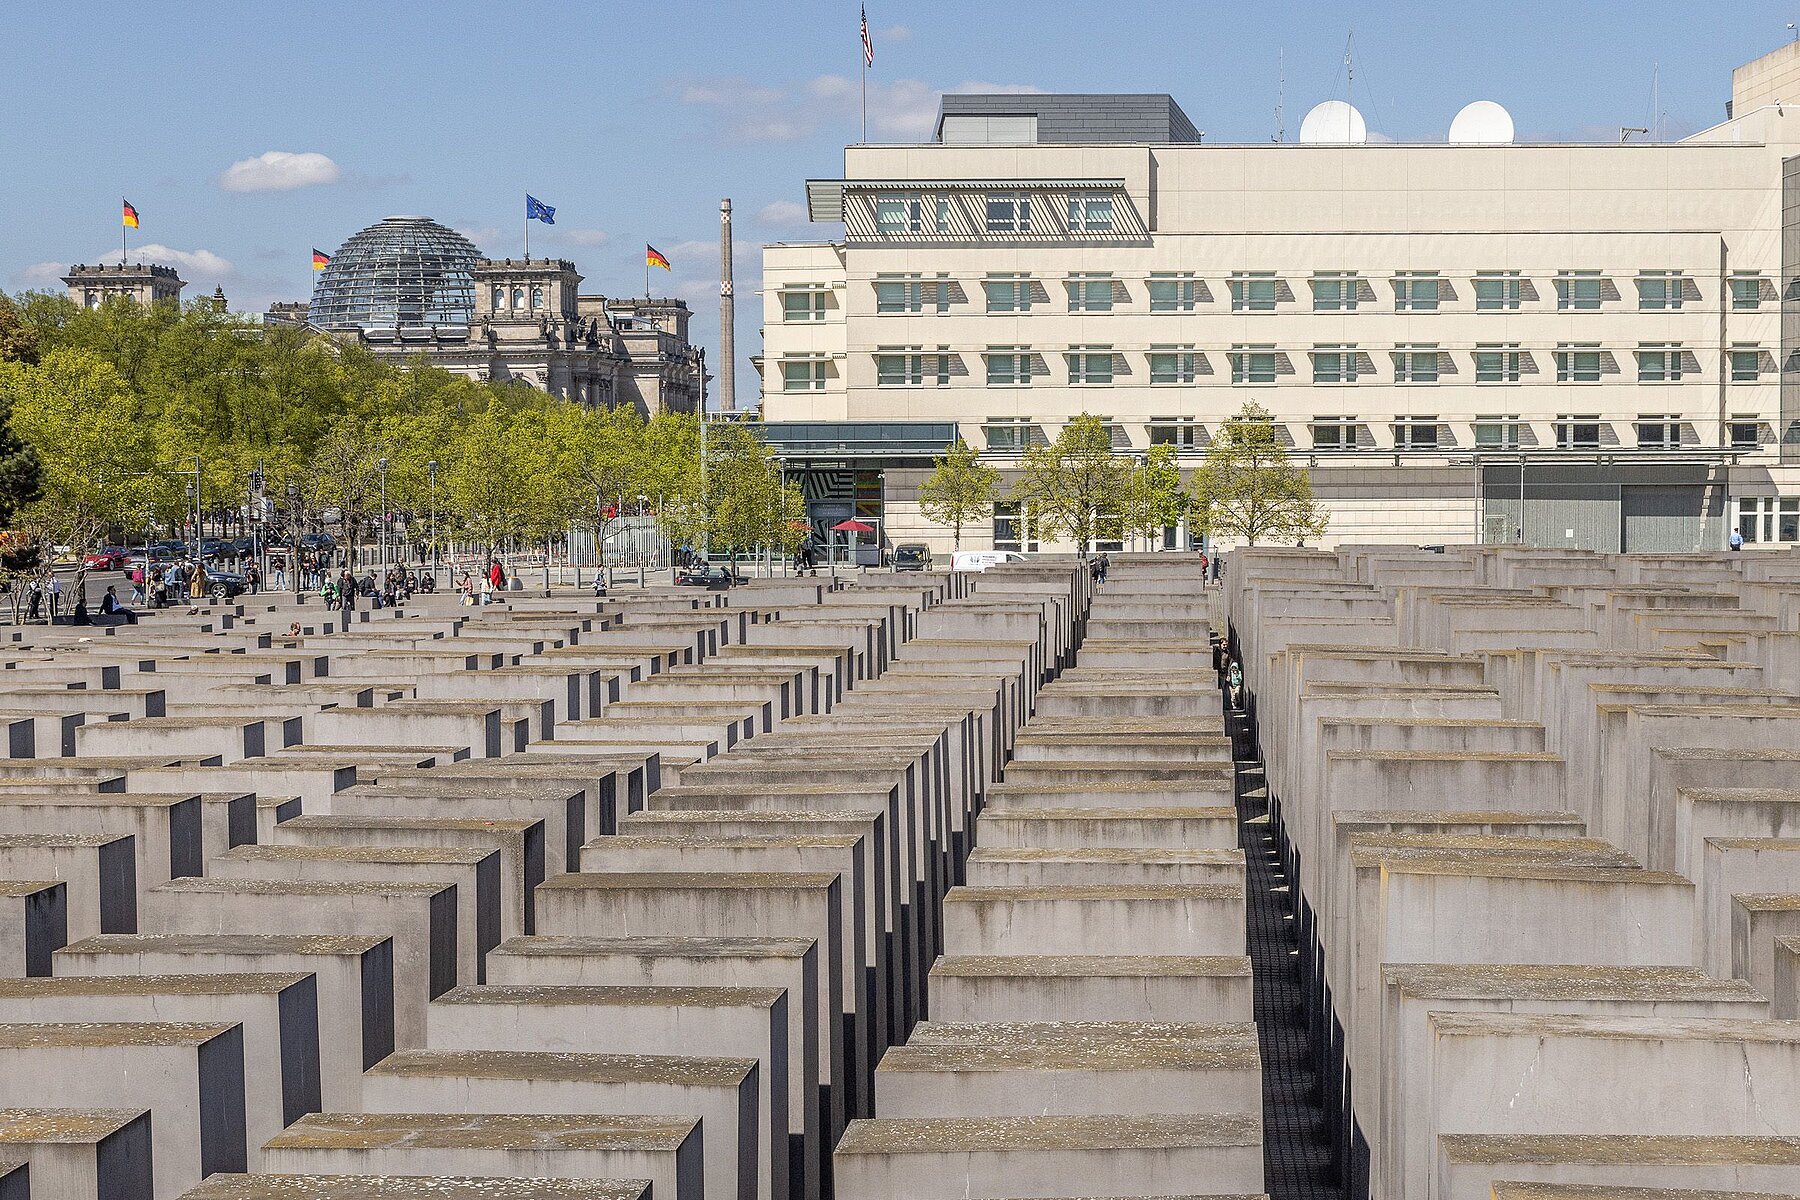 Im Vordergrund befinden sich die Betonstelen des Denkmals, links im Hintergrund das Reichstagsgebäude mit Kuppel, rechts hinten das weiße Gebäude der Botschaft der USA.